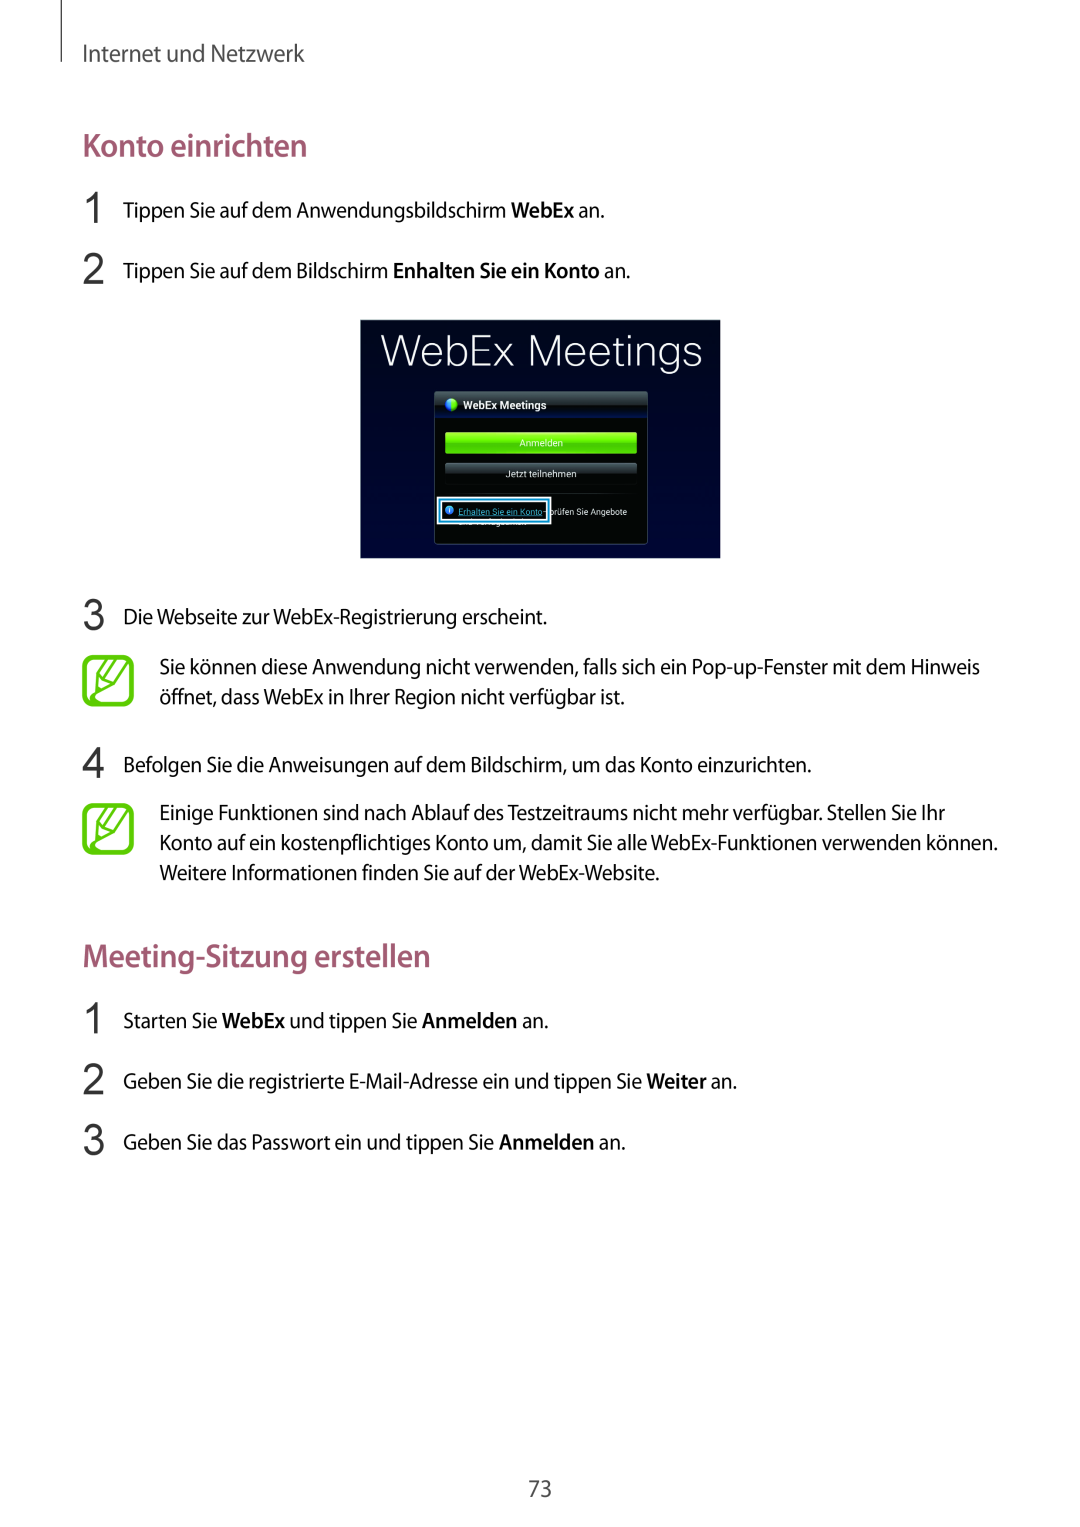 Samsung SM-P9000ZWAXEO, SM-P9000ZWAATO, SM-P9000ZKAXEO Konto einrichten, Meeting-Sitzung erstellen, Internet und Netzwerk 